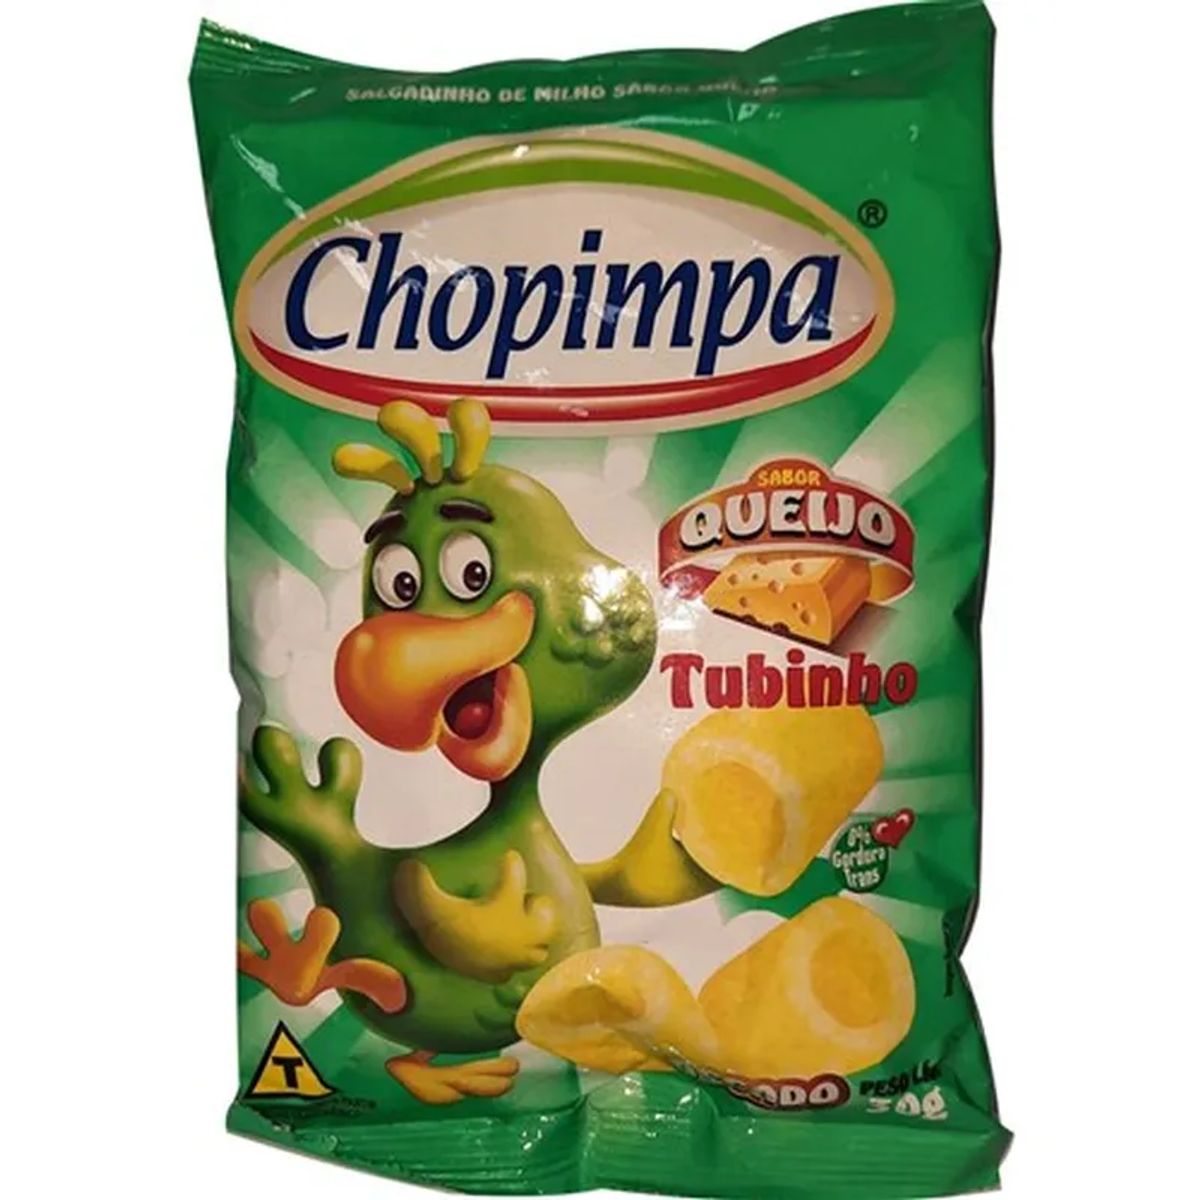 Salgadinho Chopimpa Tubinho sabor Queijo 30g